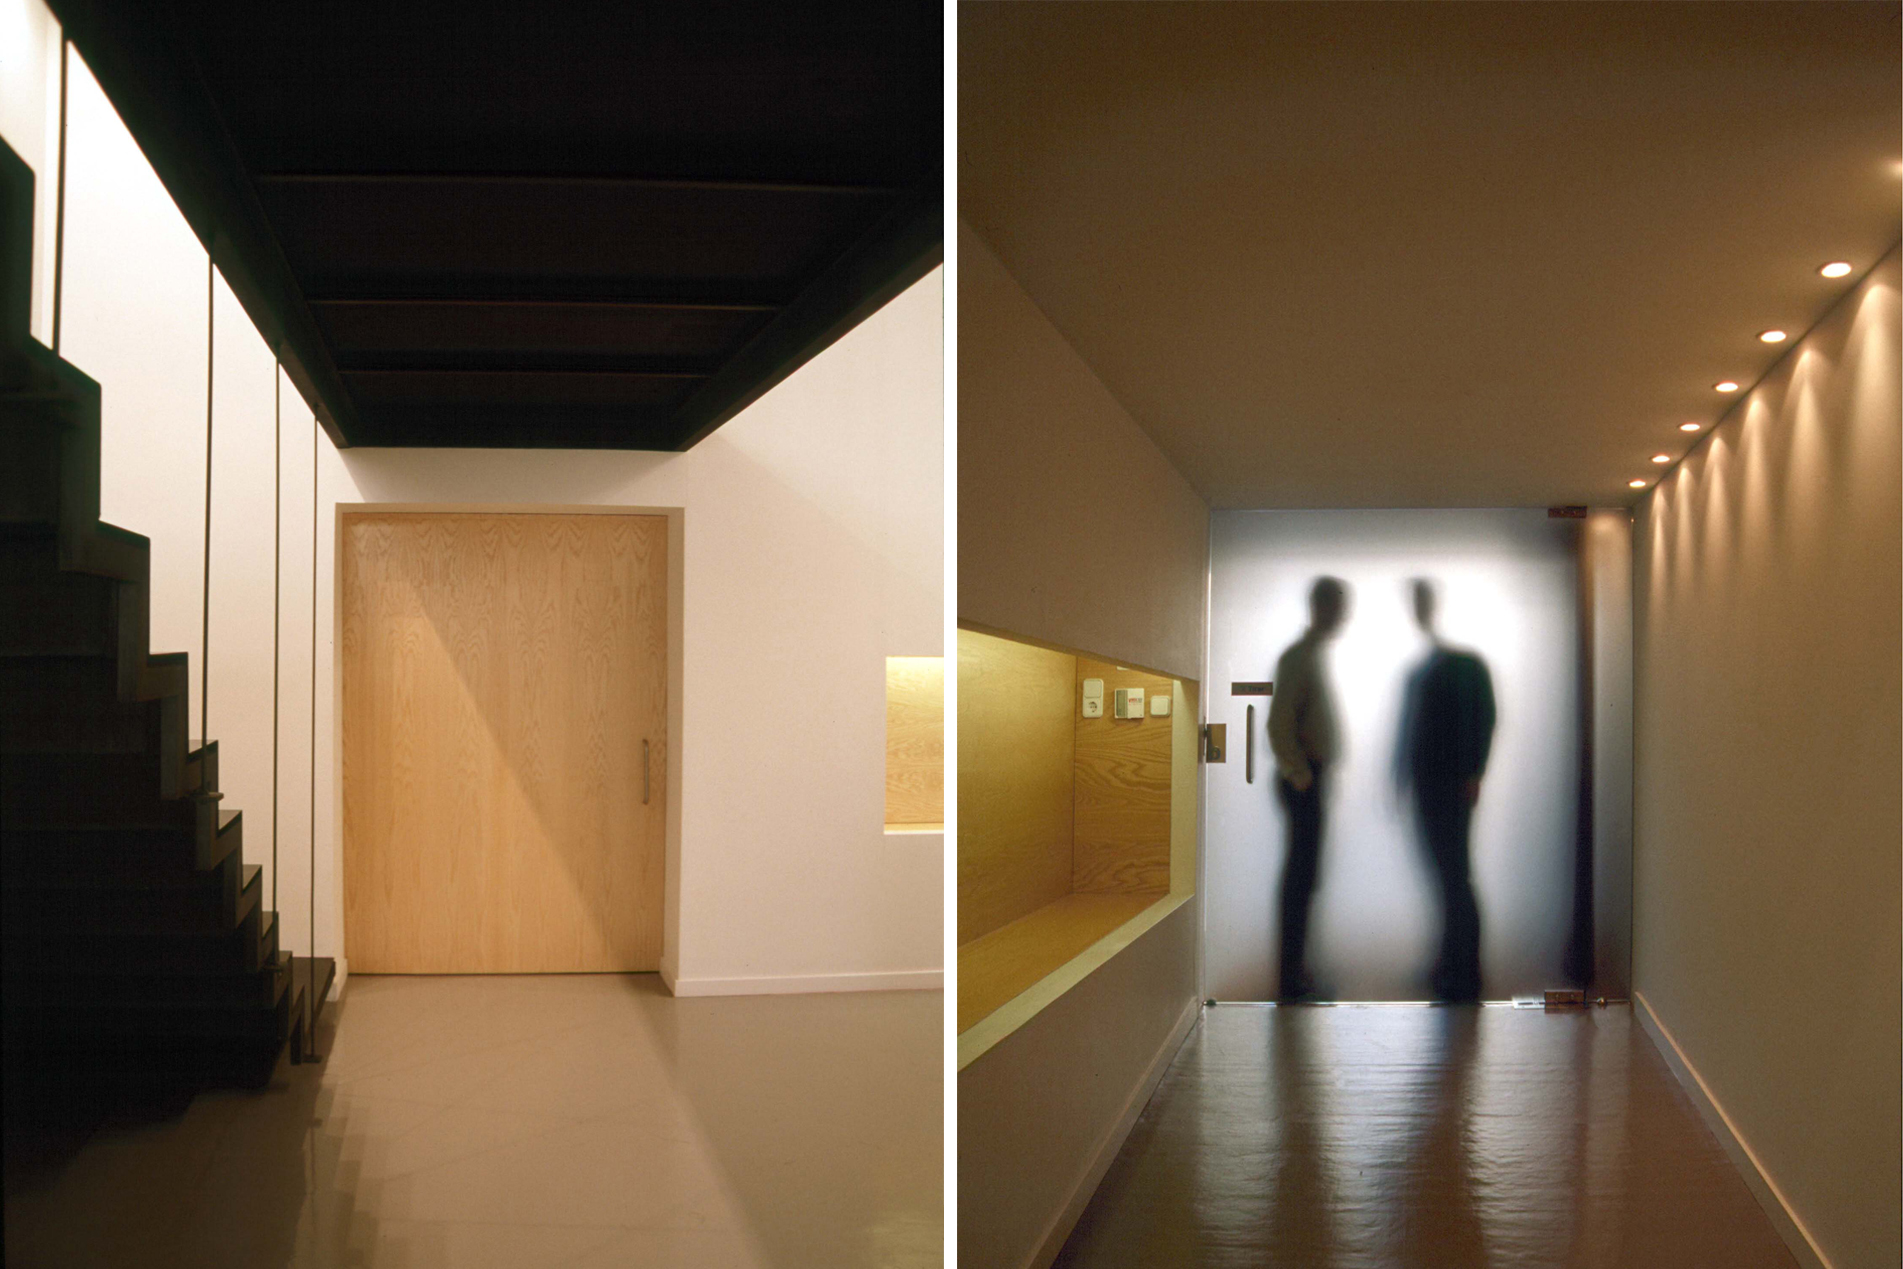 BY MoRE_Agencia publiciadad el laboratorio_composición dos fotografias_interior_escalera y puerta de acceso